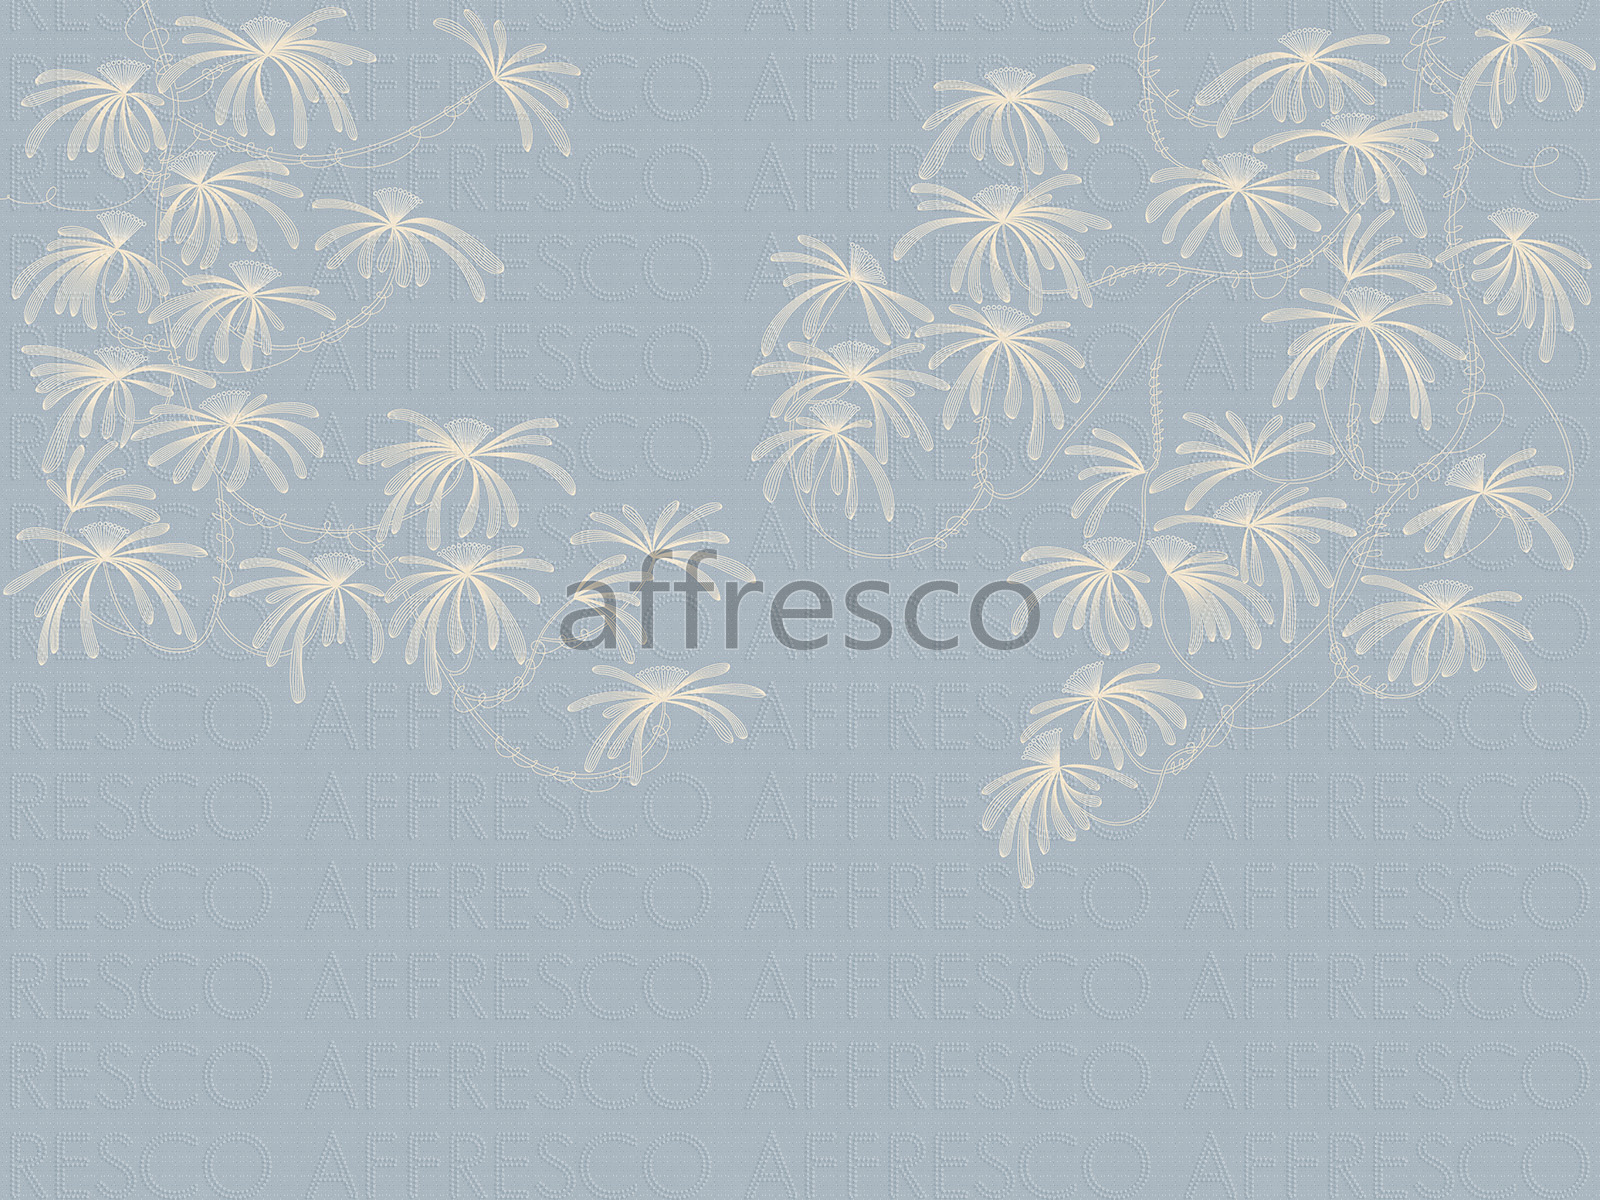 AF2155-COL5 | Line Art | Affresco Factory